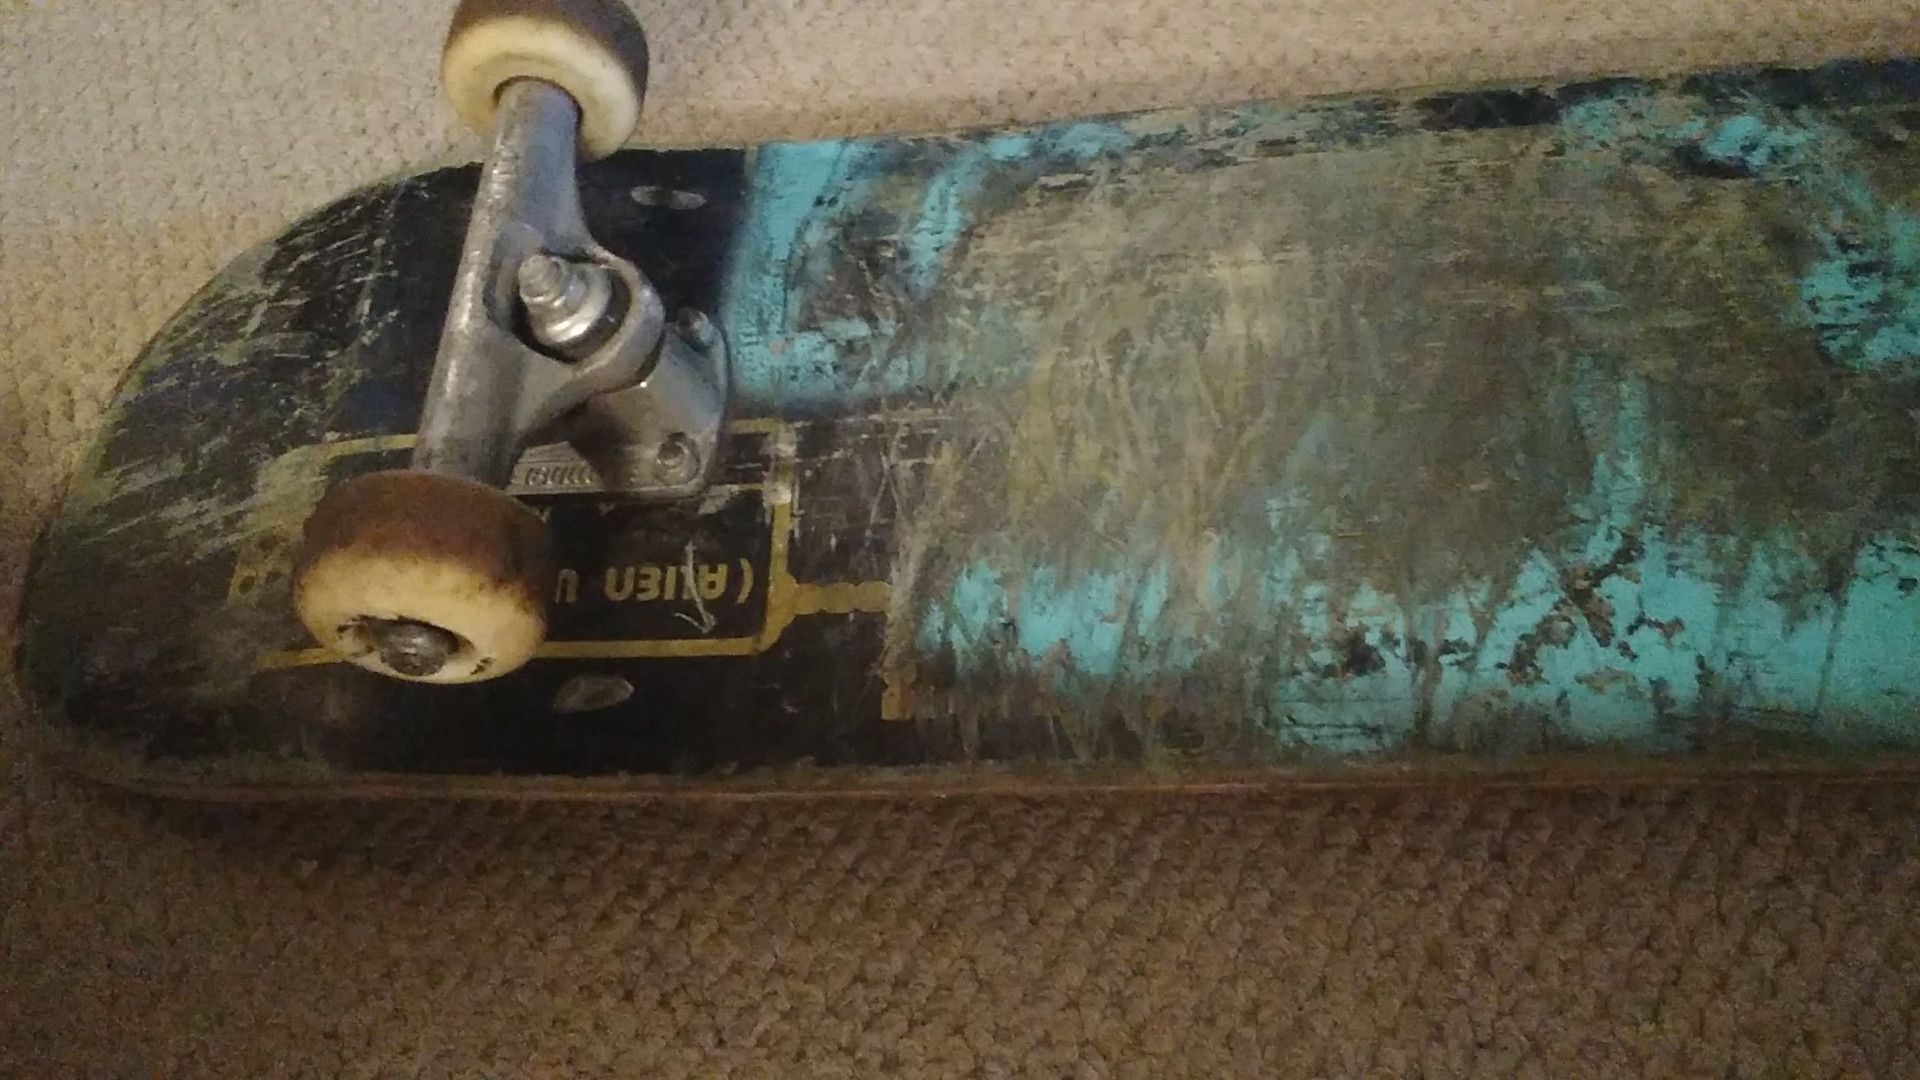 Skateboard alien $70